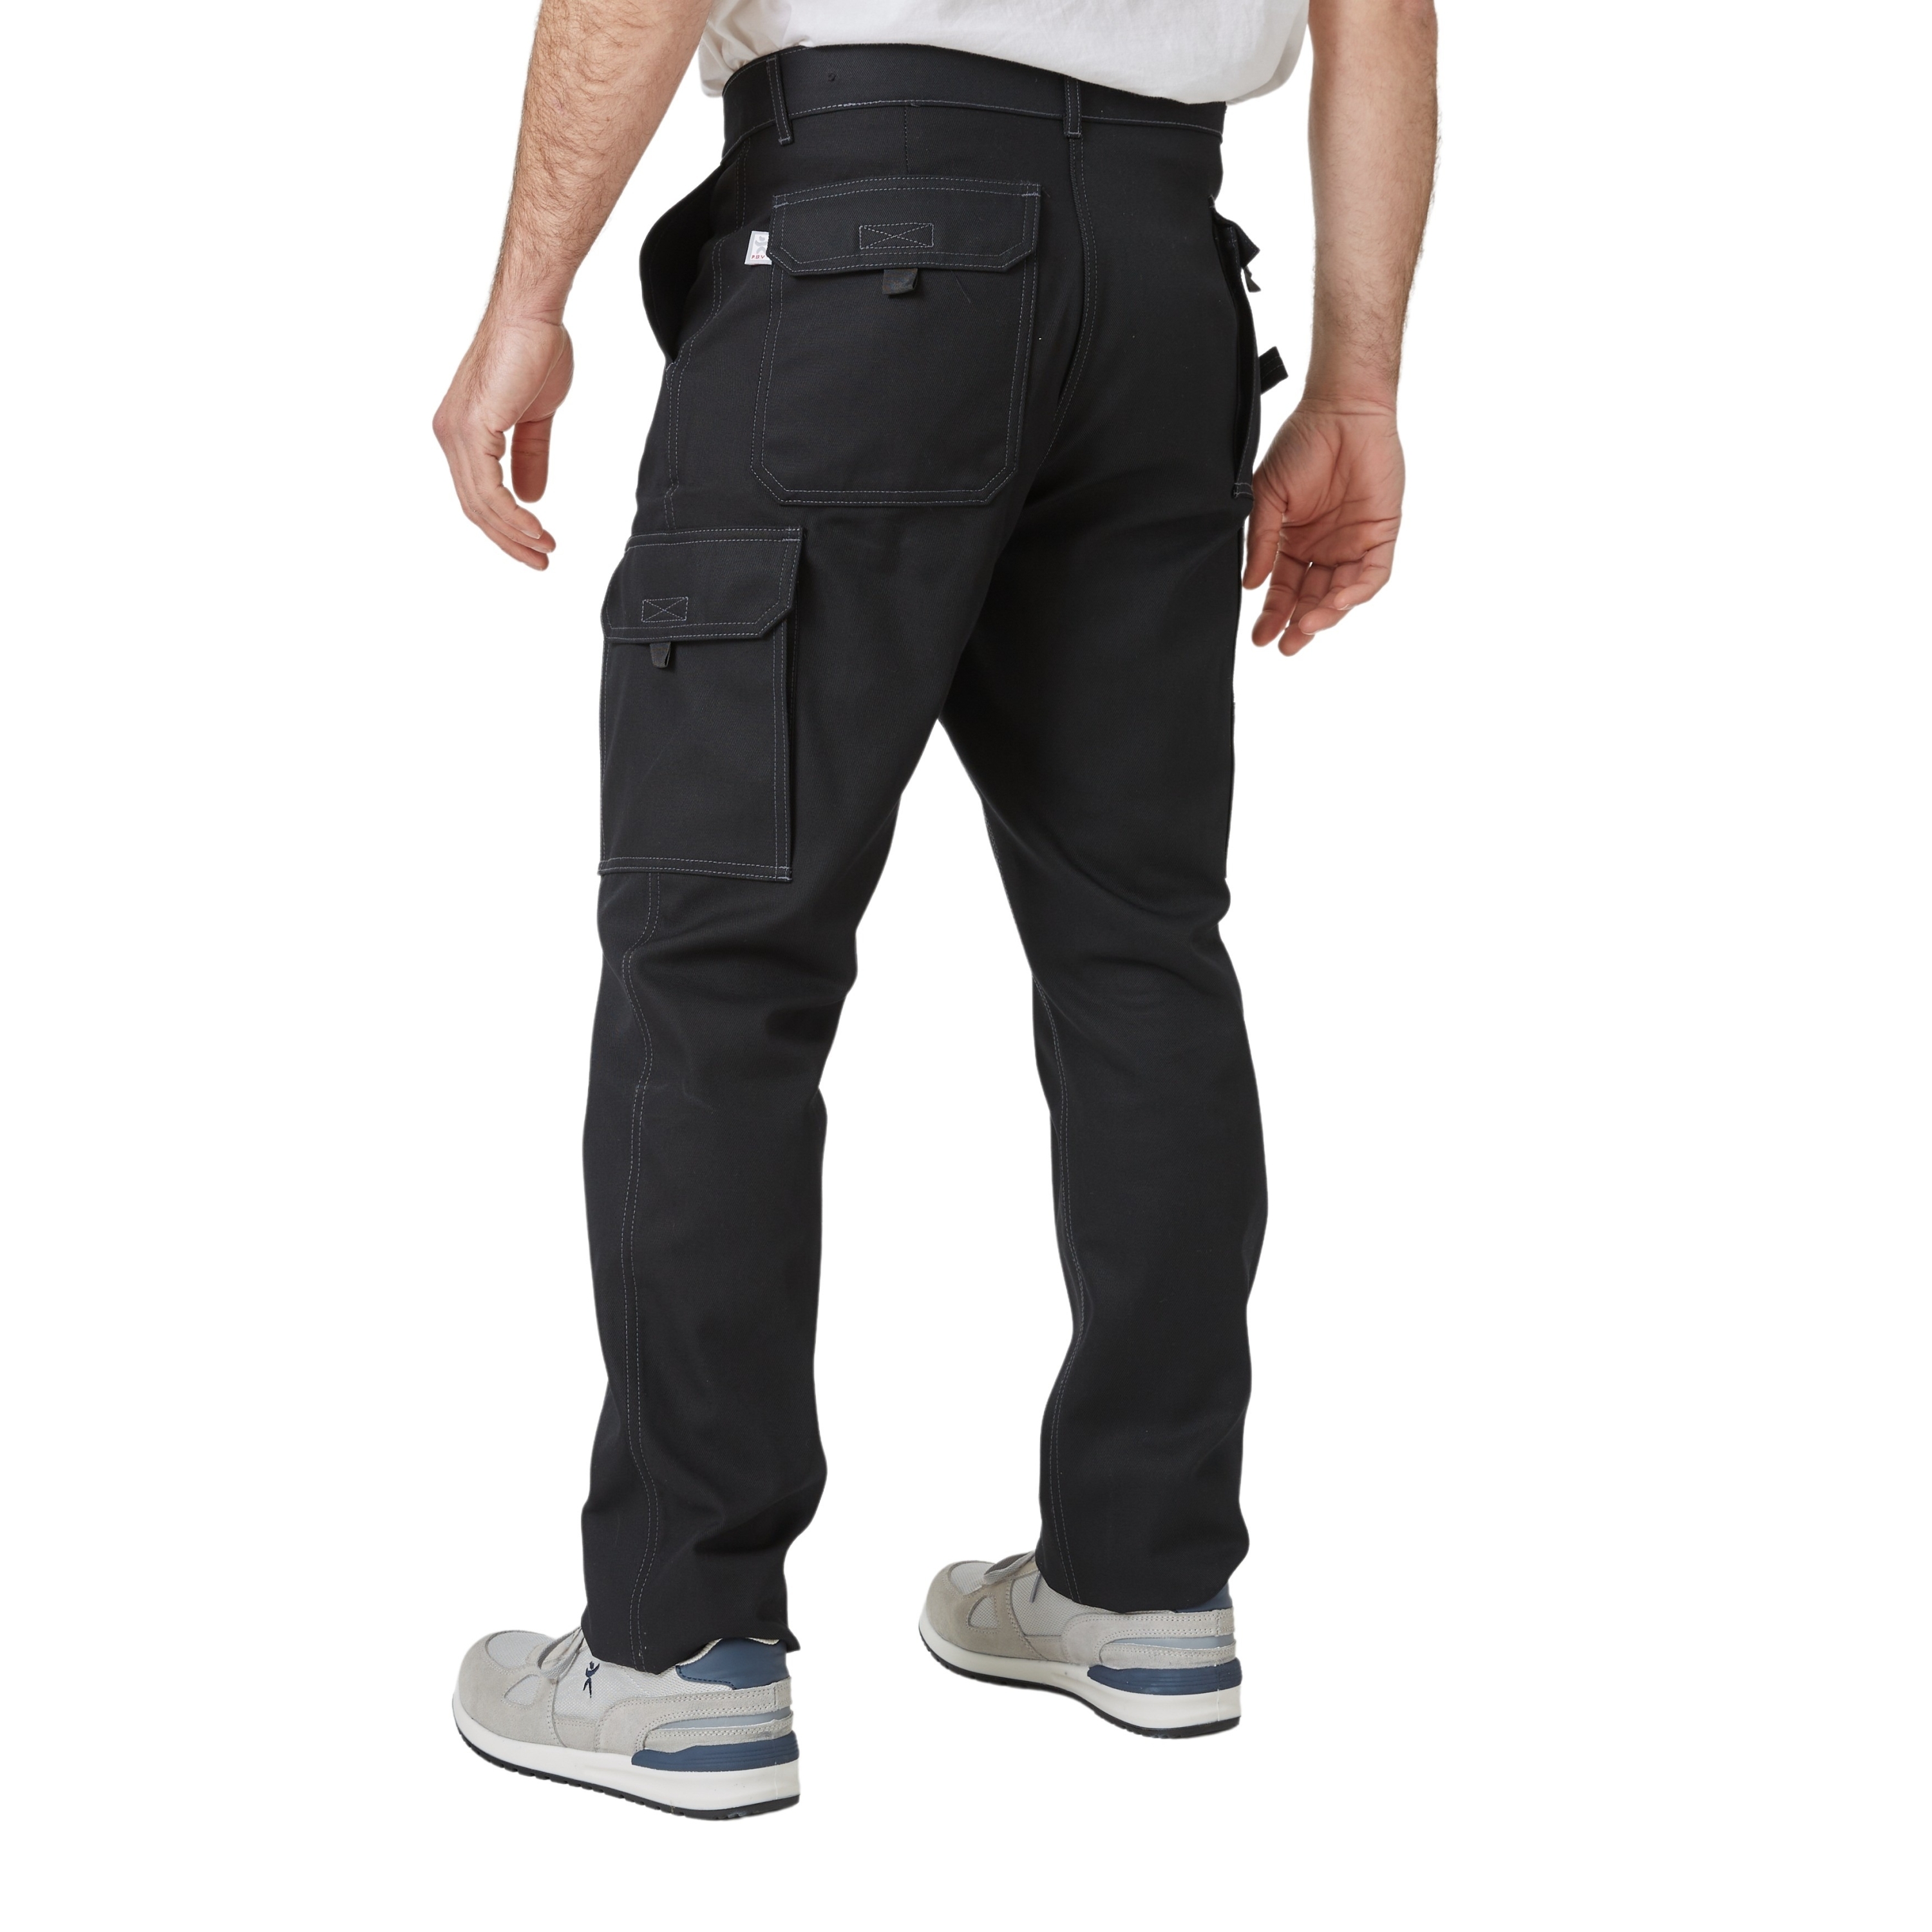 Pantalon de Travail, 100% Coton, Irrétrécissable, Elastique au Dos